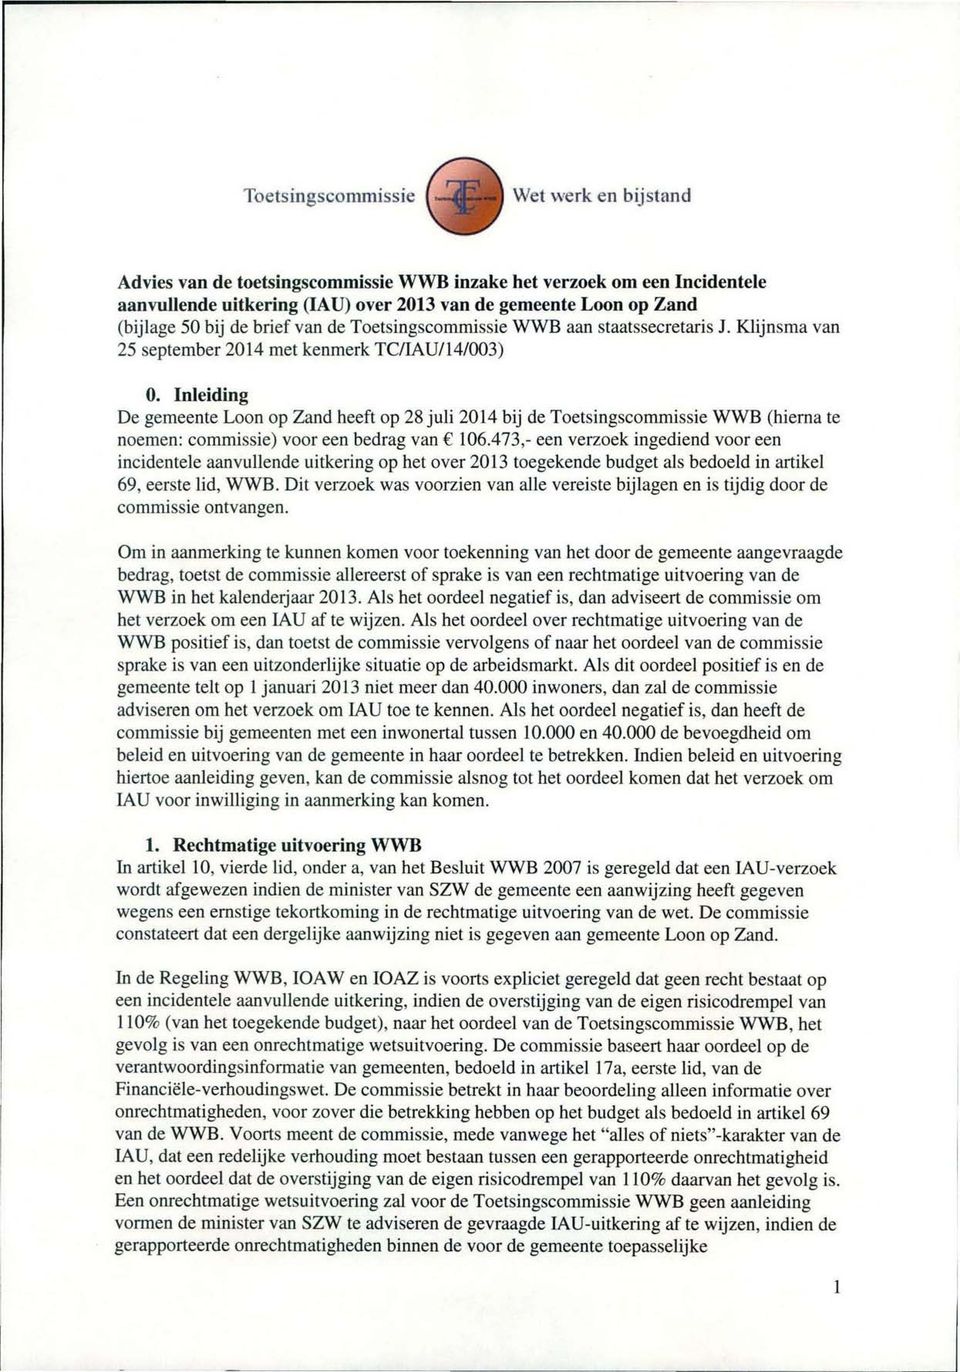 Inleiding De gemeente Loon op Zand heeft op 28 juli 2014 bij de Toetsingscommissie WWB (hierna te noemen: commissie) voor een bedrag van Ç 106.